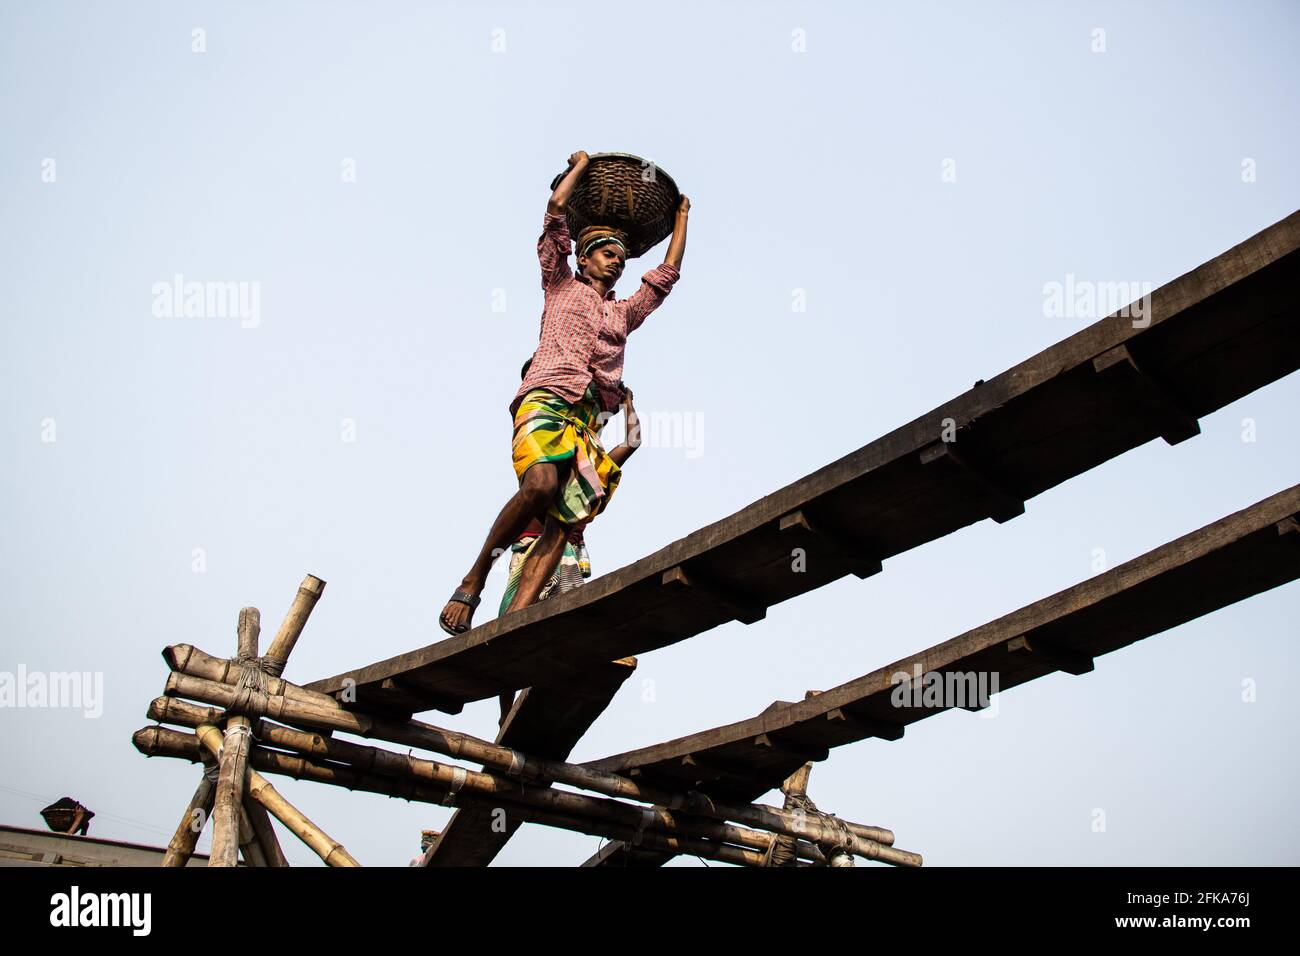 Die Bewegung von hart arbeitenden Menschen, Ich habe dieses Bild am 17-11-2018 aus Amen Bazar, Dhaka, Bangladesch aufgenommen Stockfoto